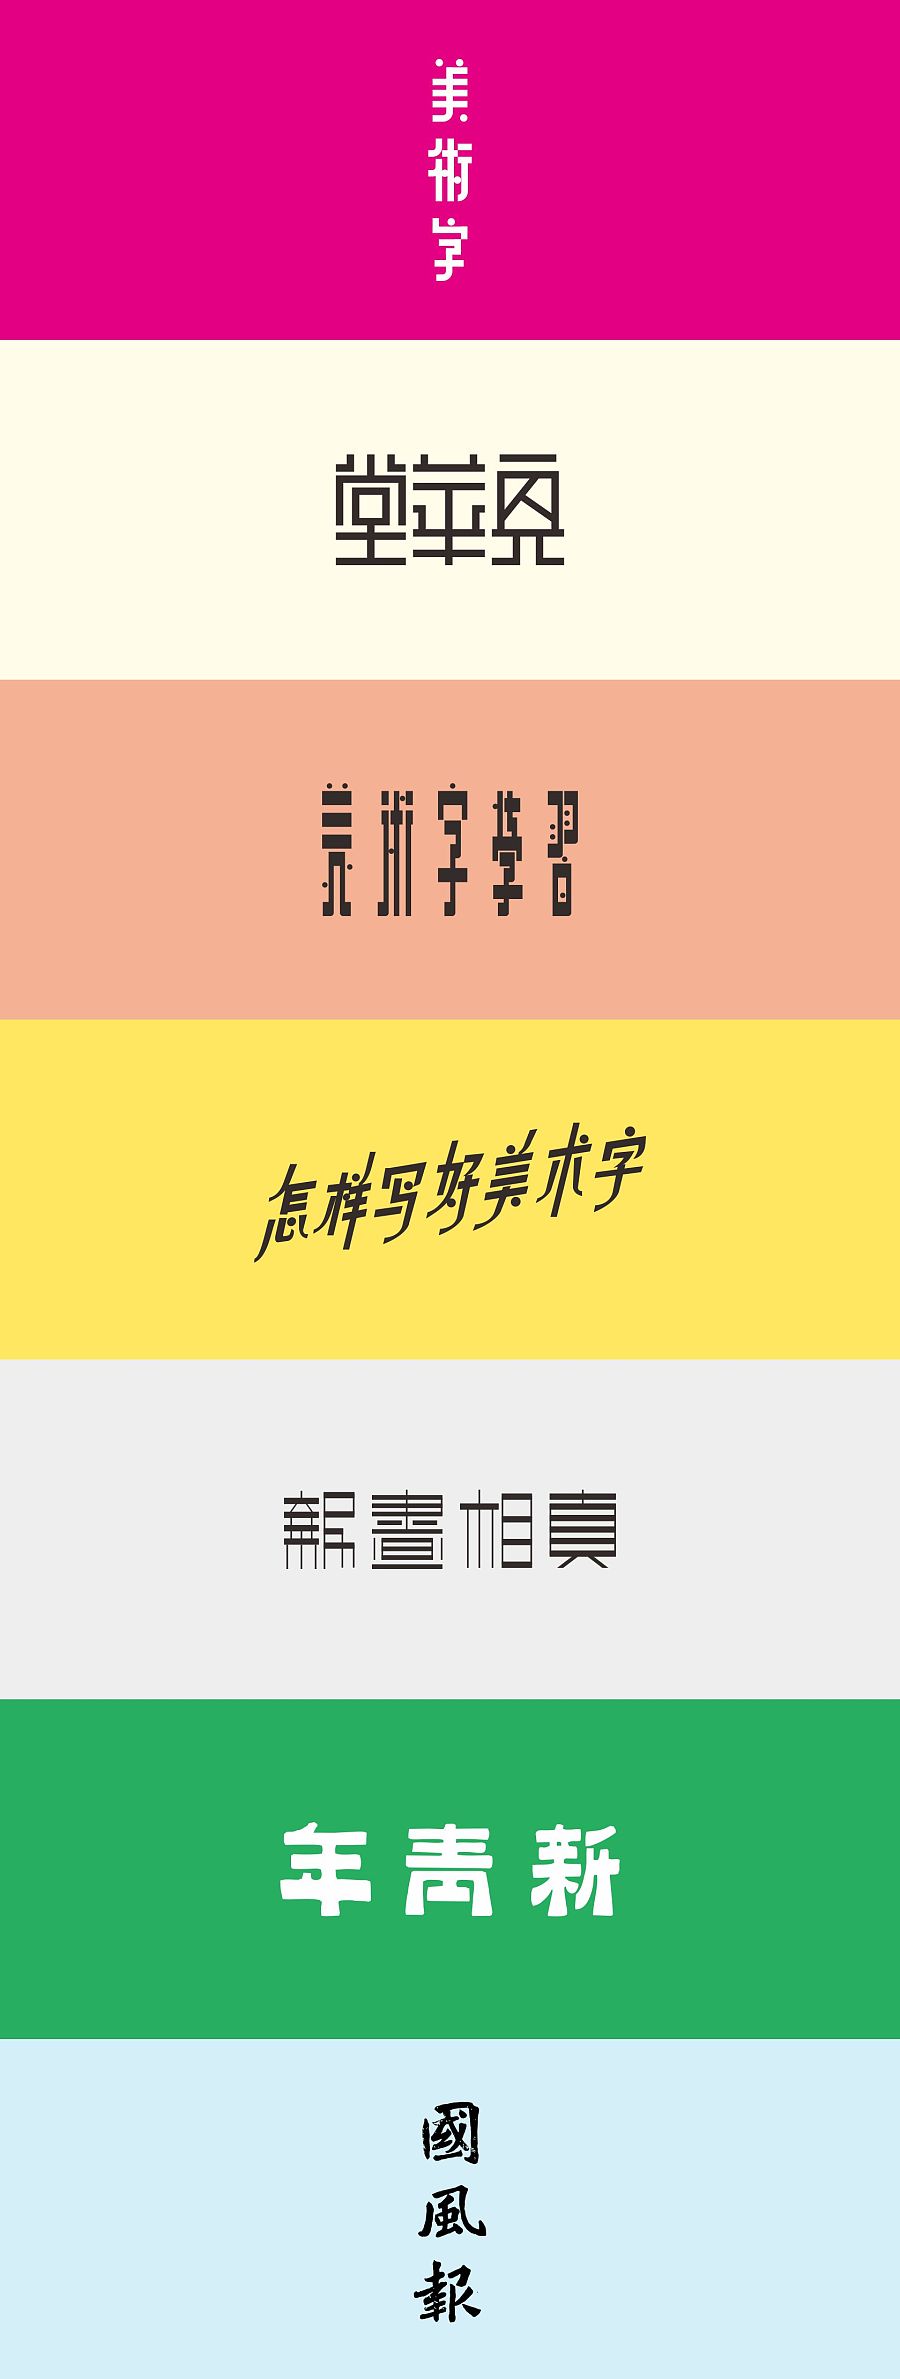 China TDC | Chinese modern art font design